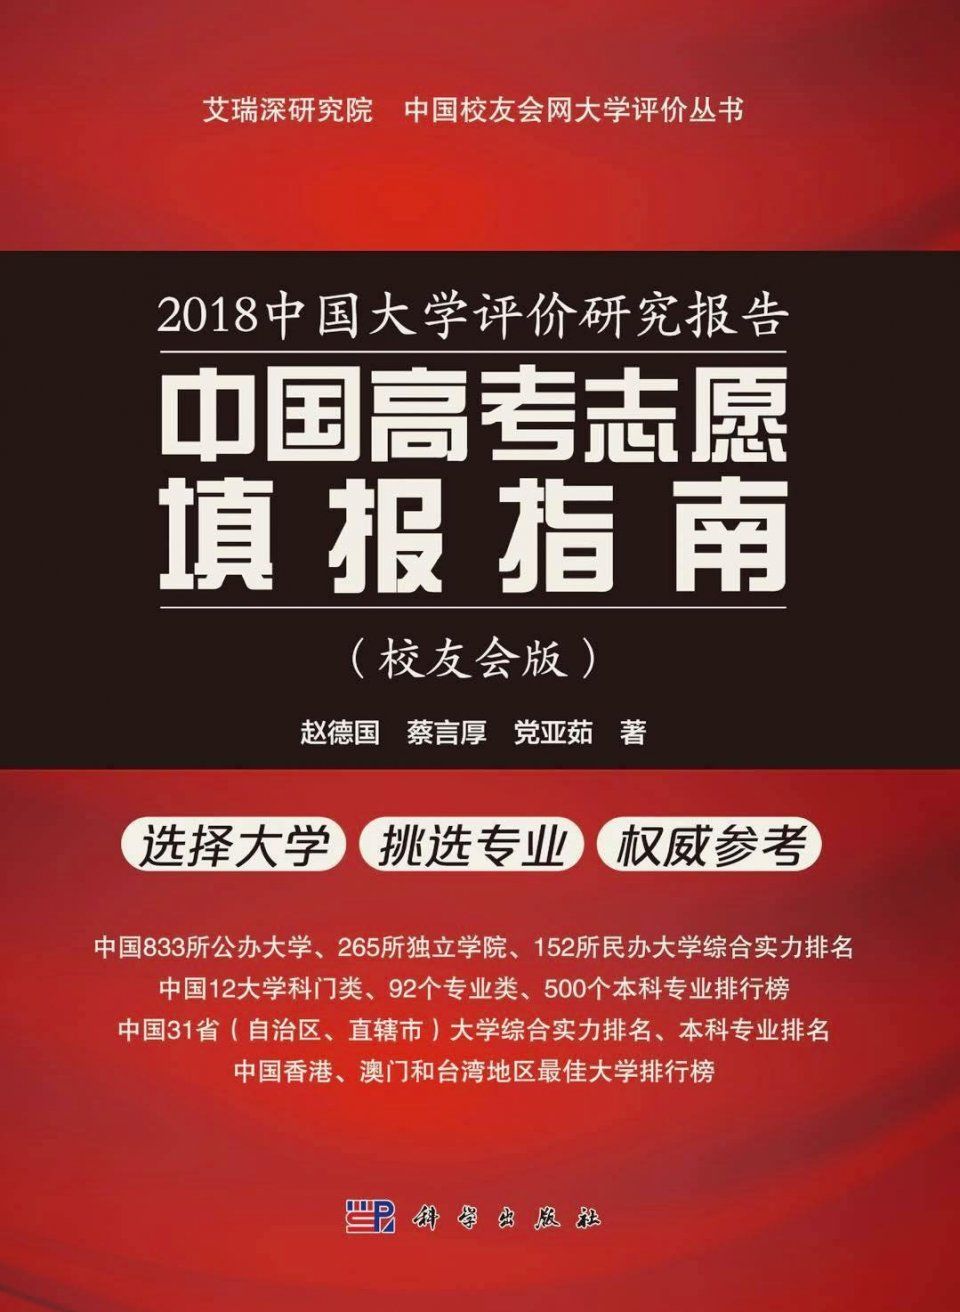 校友会2018中国大学管理科学与工程类专业排名